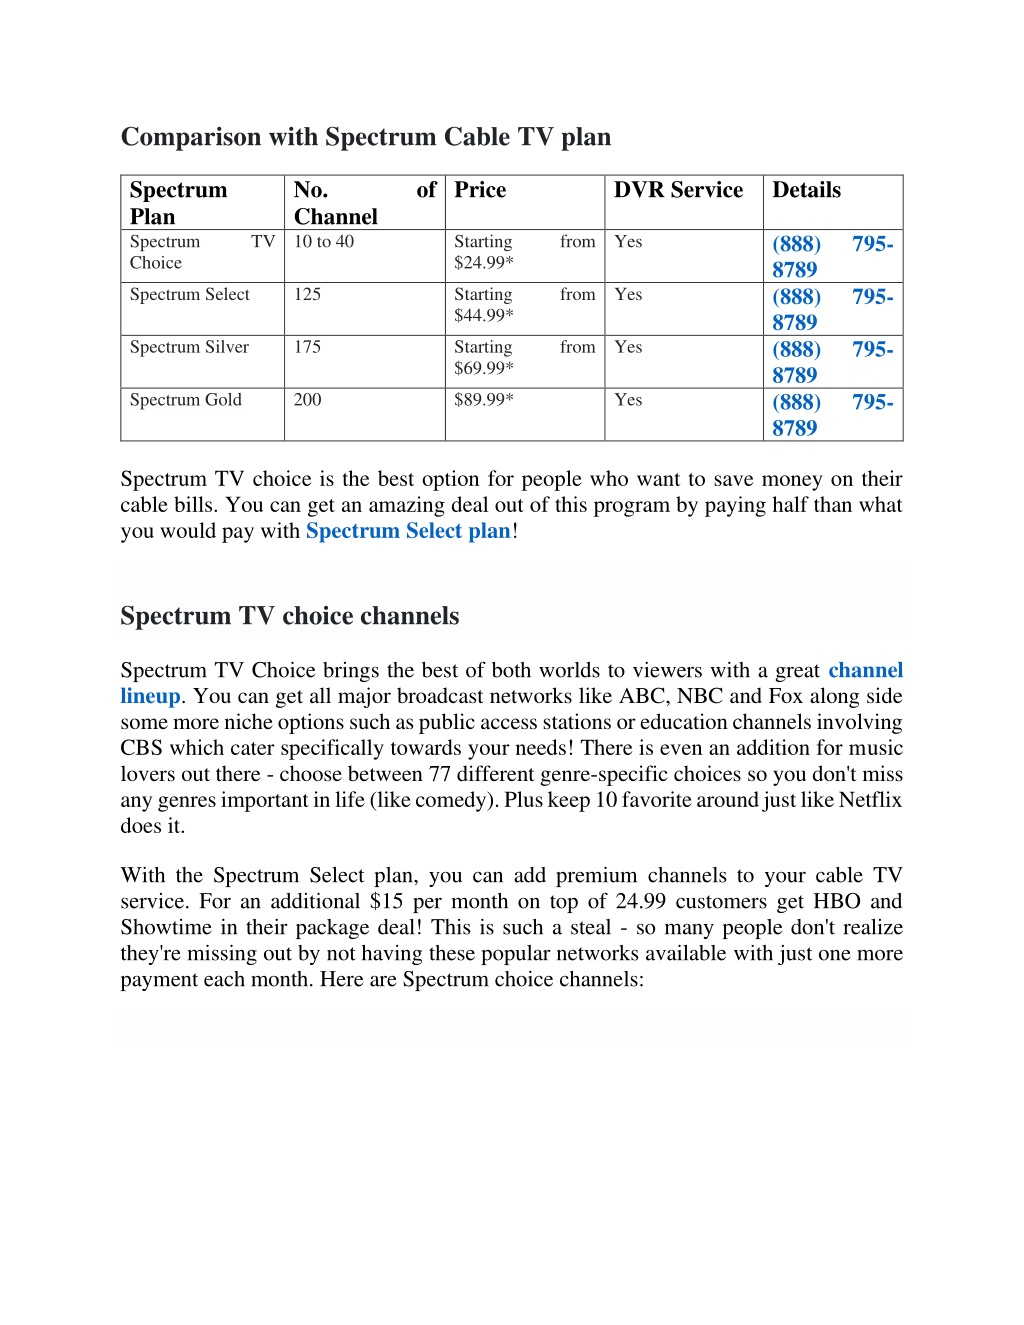 tv choice spectrum channels